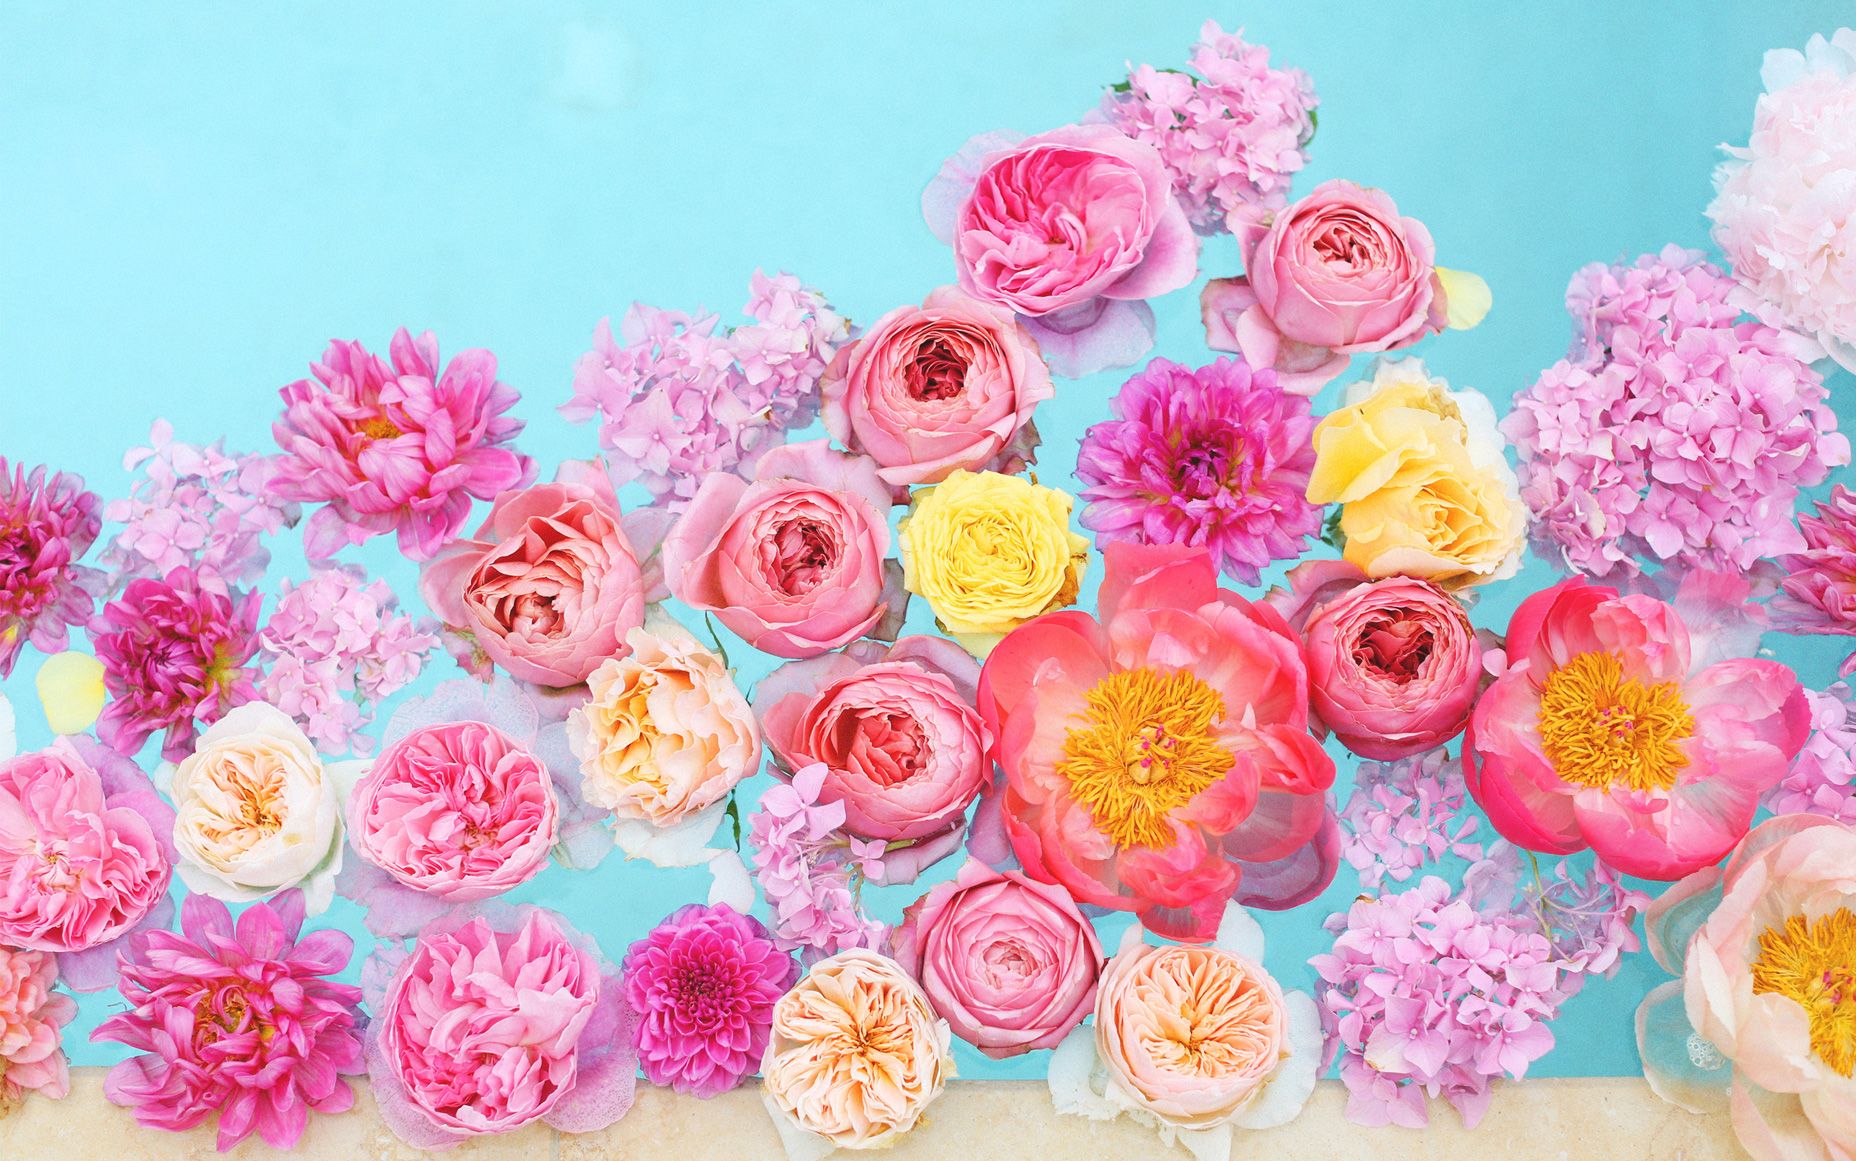 floral desktop wallpaper,flower,pink,rose,garden roses,plant